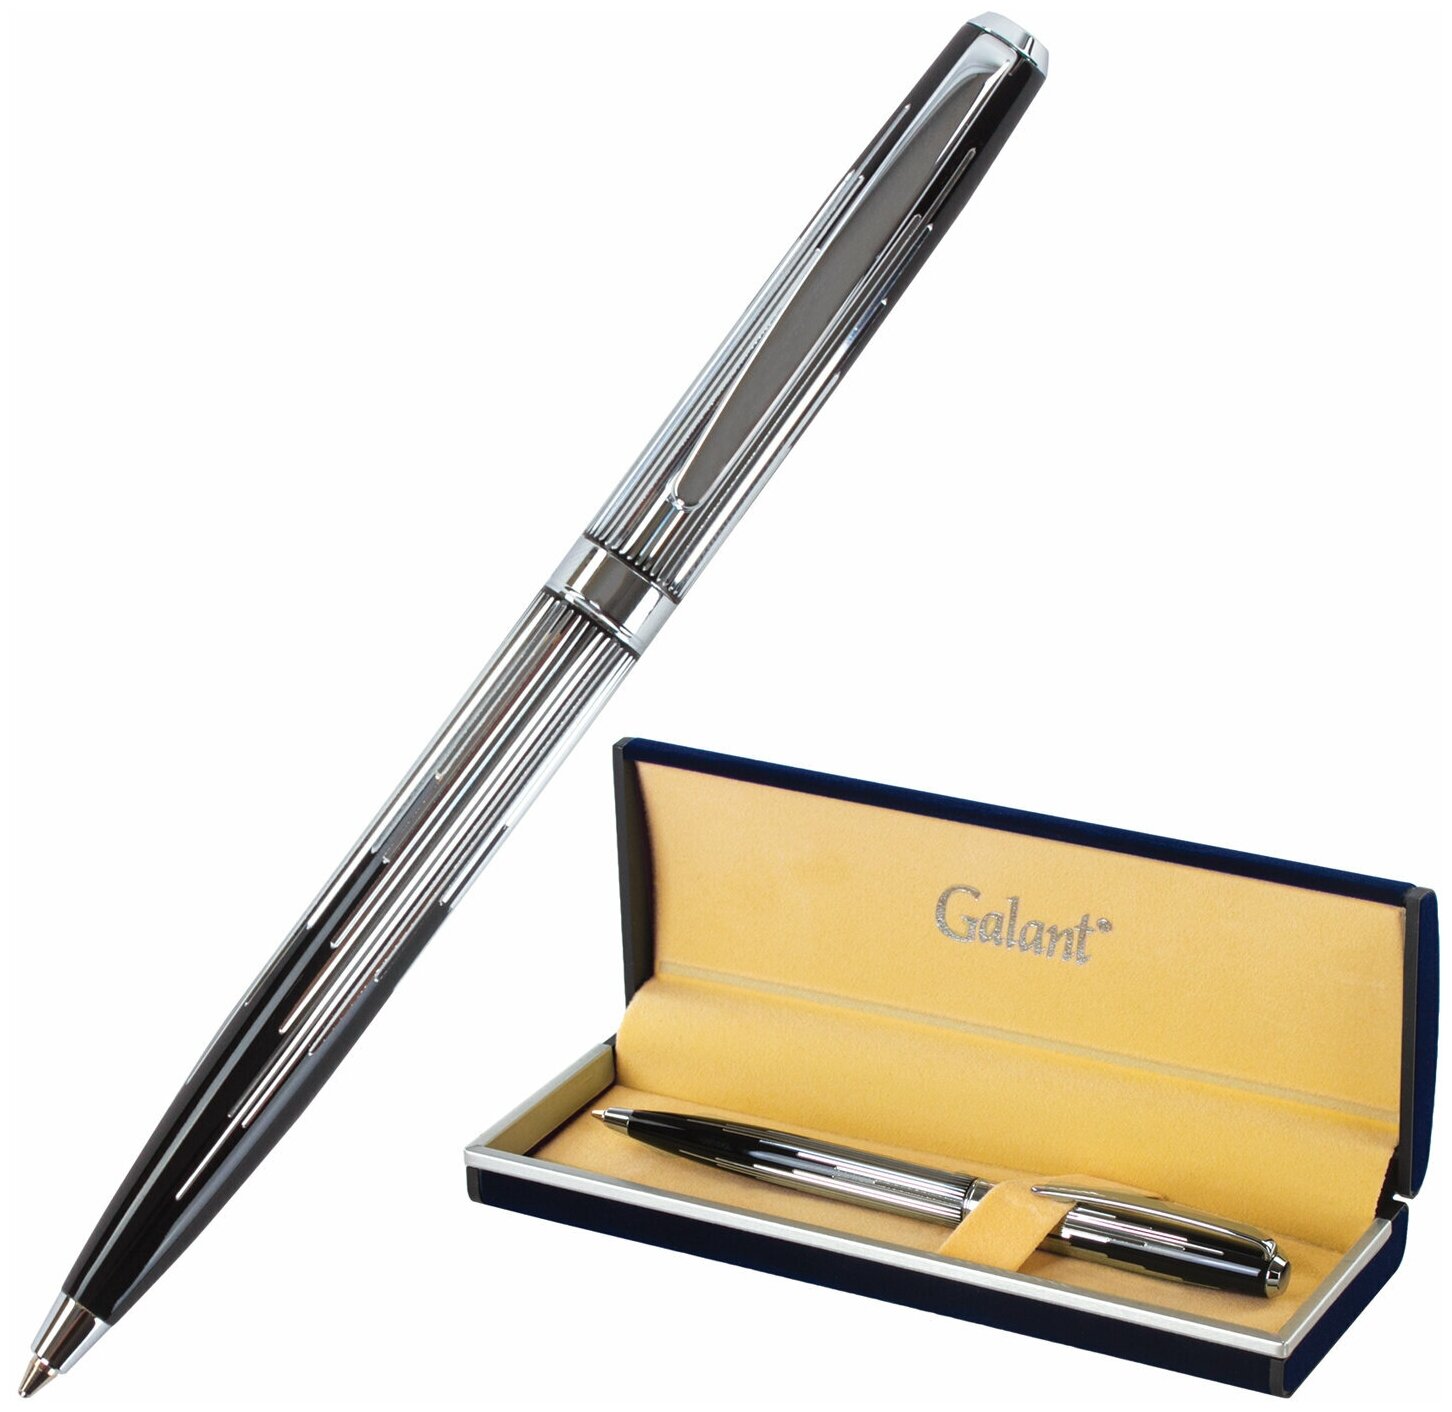 Ручка подарочная шариковая GALANT Offenbach корпус серебристый с черным хромированные детали пишущий узел 07 мм синяя 141014 1 шт.